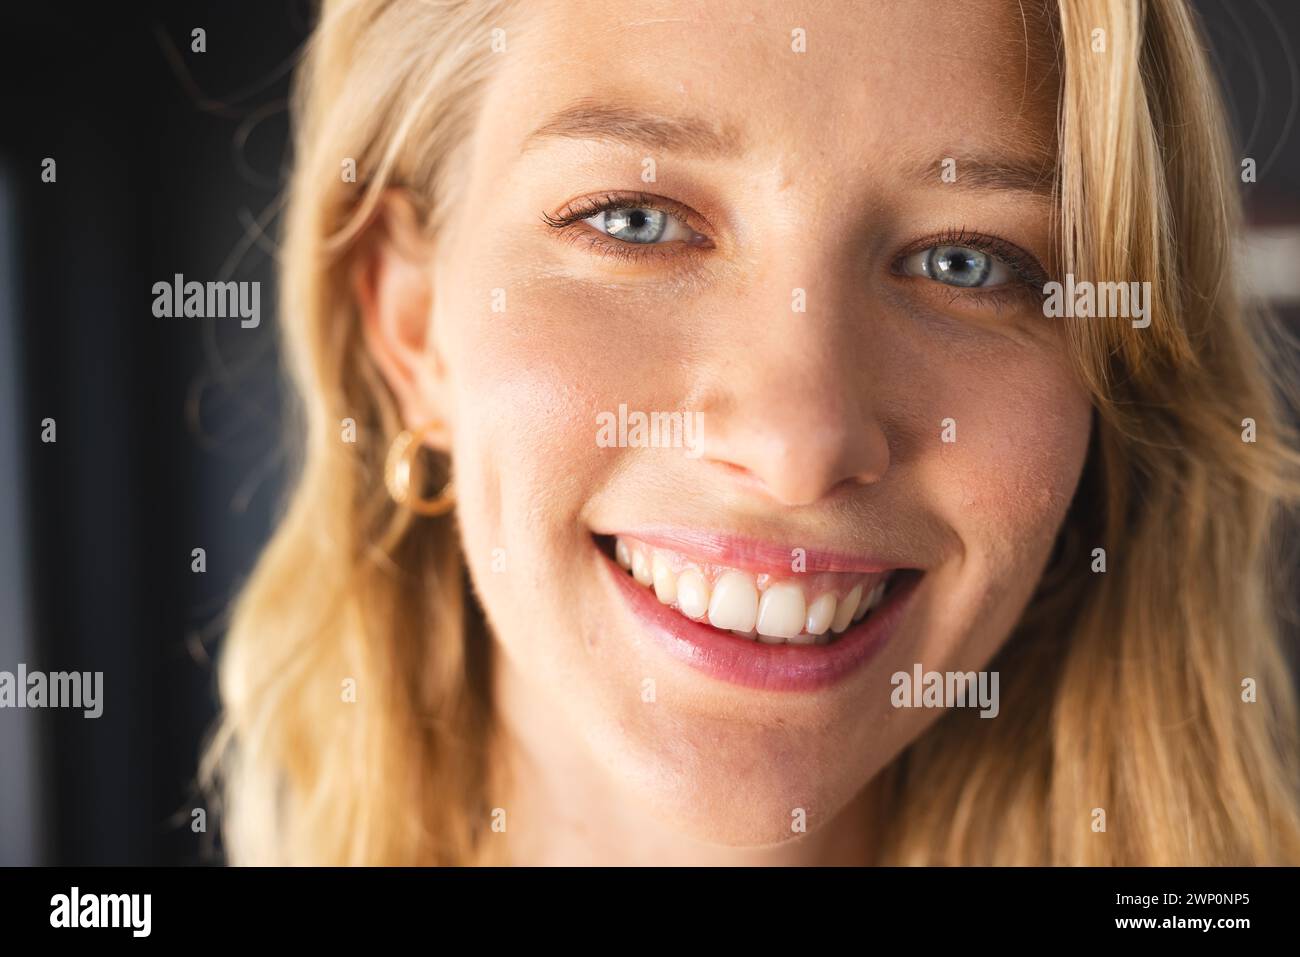 Une jeune femme caucasienne aux cheveux blonds et aux yeux bleus sourit à la caméra Banque D'Images